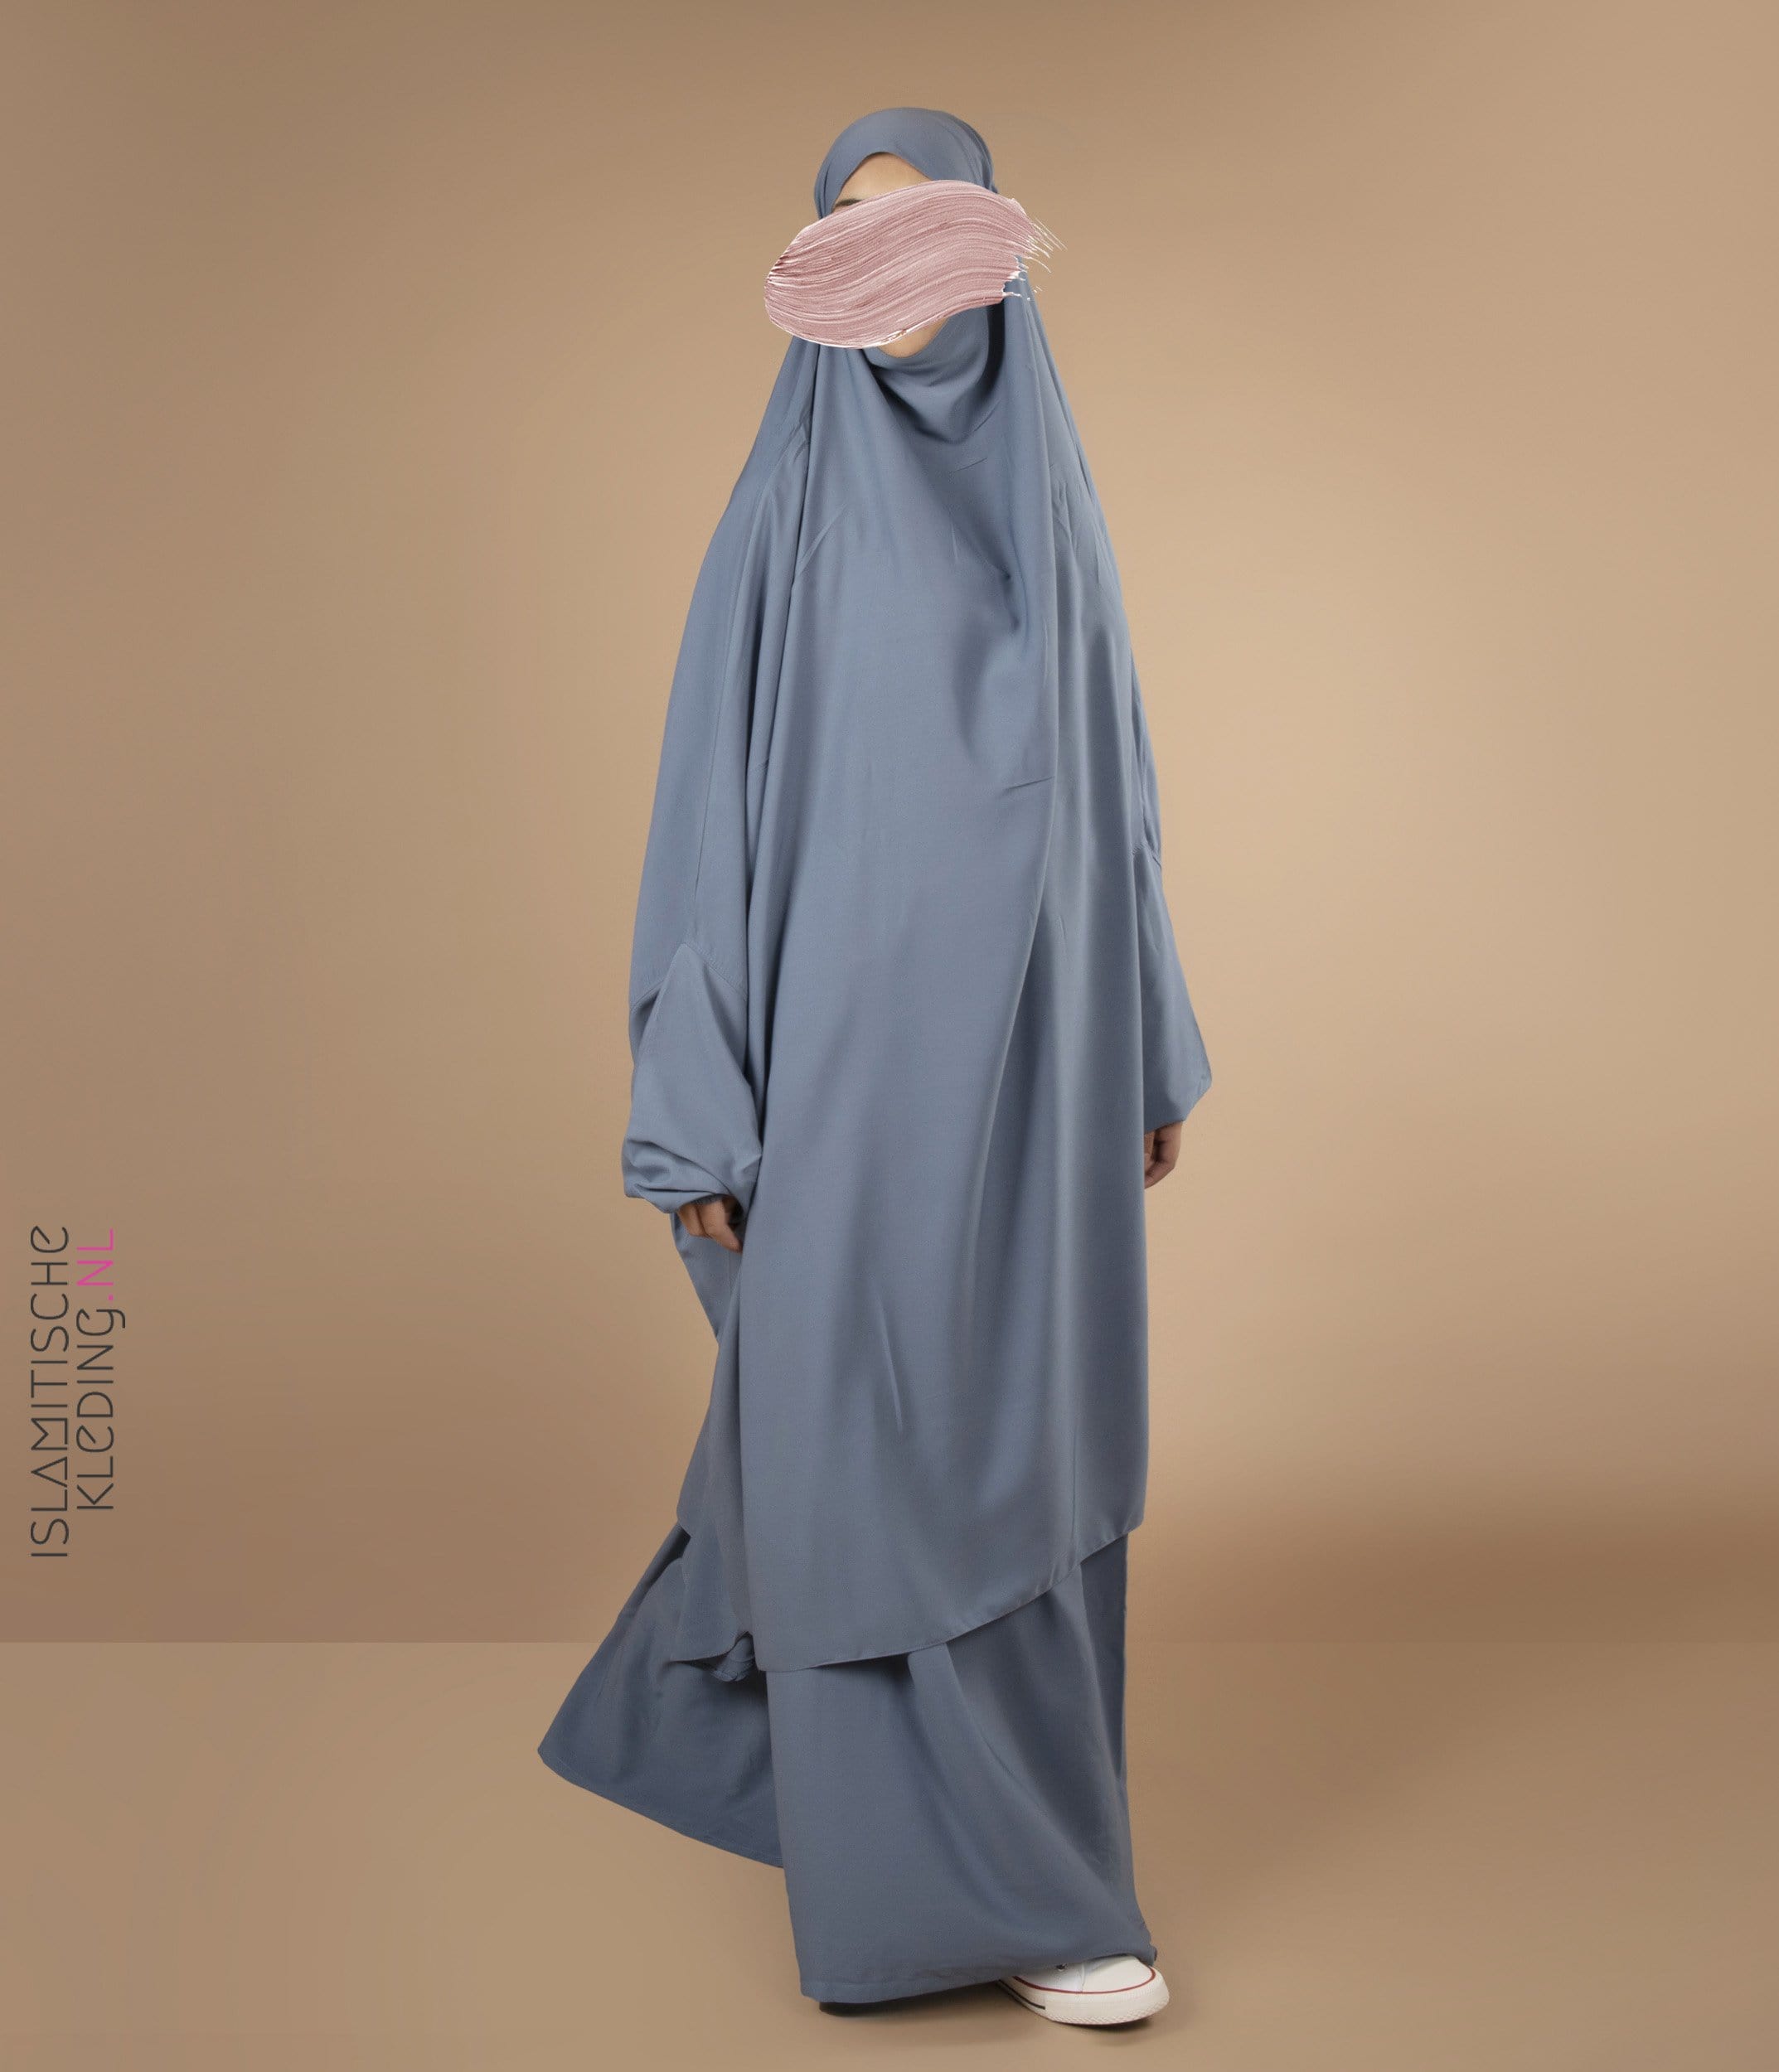 Spreekwoord bellen gesmolten 2-piece Jilbab Elast. Wrist jeans blue – islamitischekleding.nl